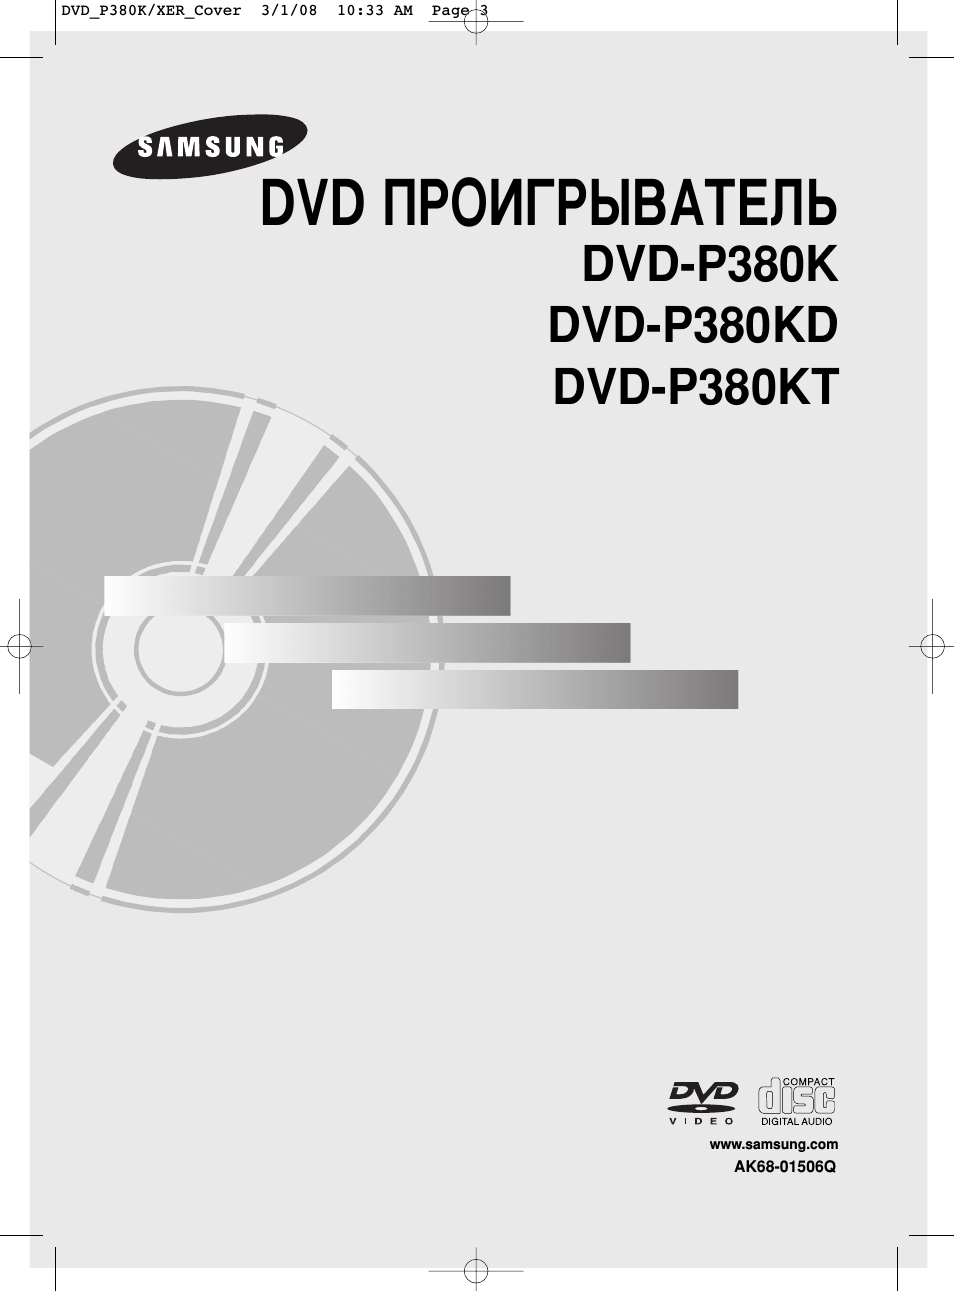 Инструкция по эксплуатации Samsung DVD-P380 KD | 71 cтраница